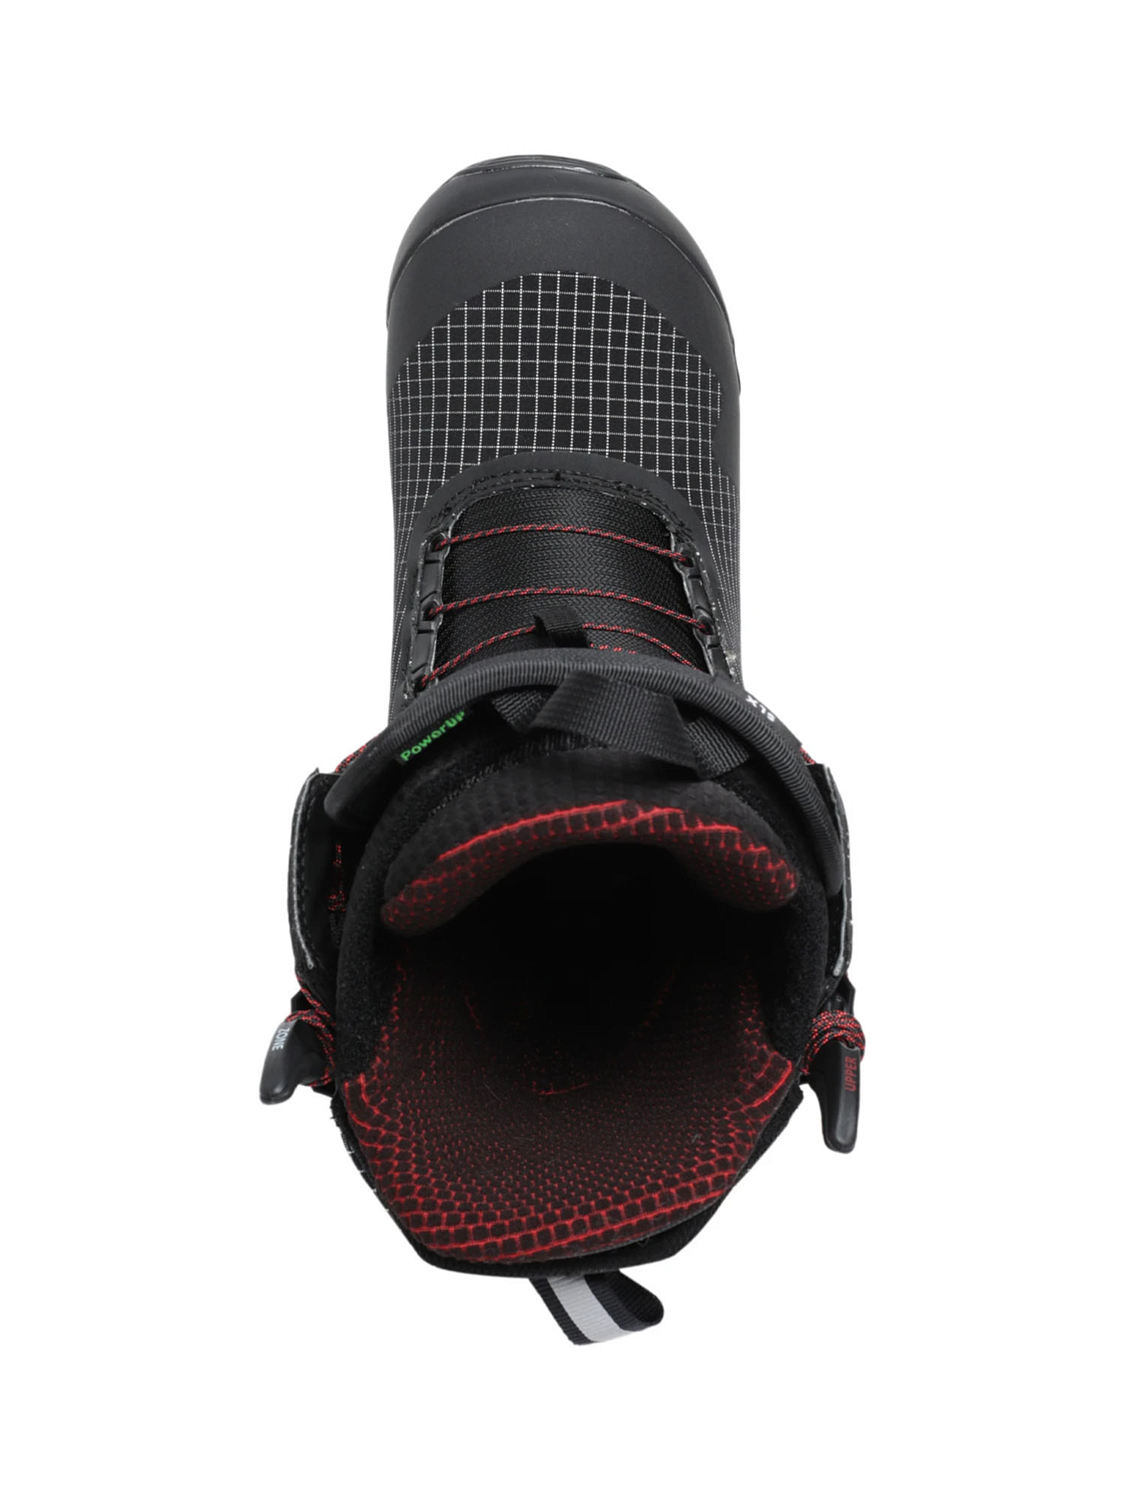 Ботинки для сноуборда BURTON 2020-21 SLX Black/Red